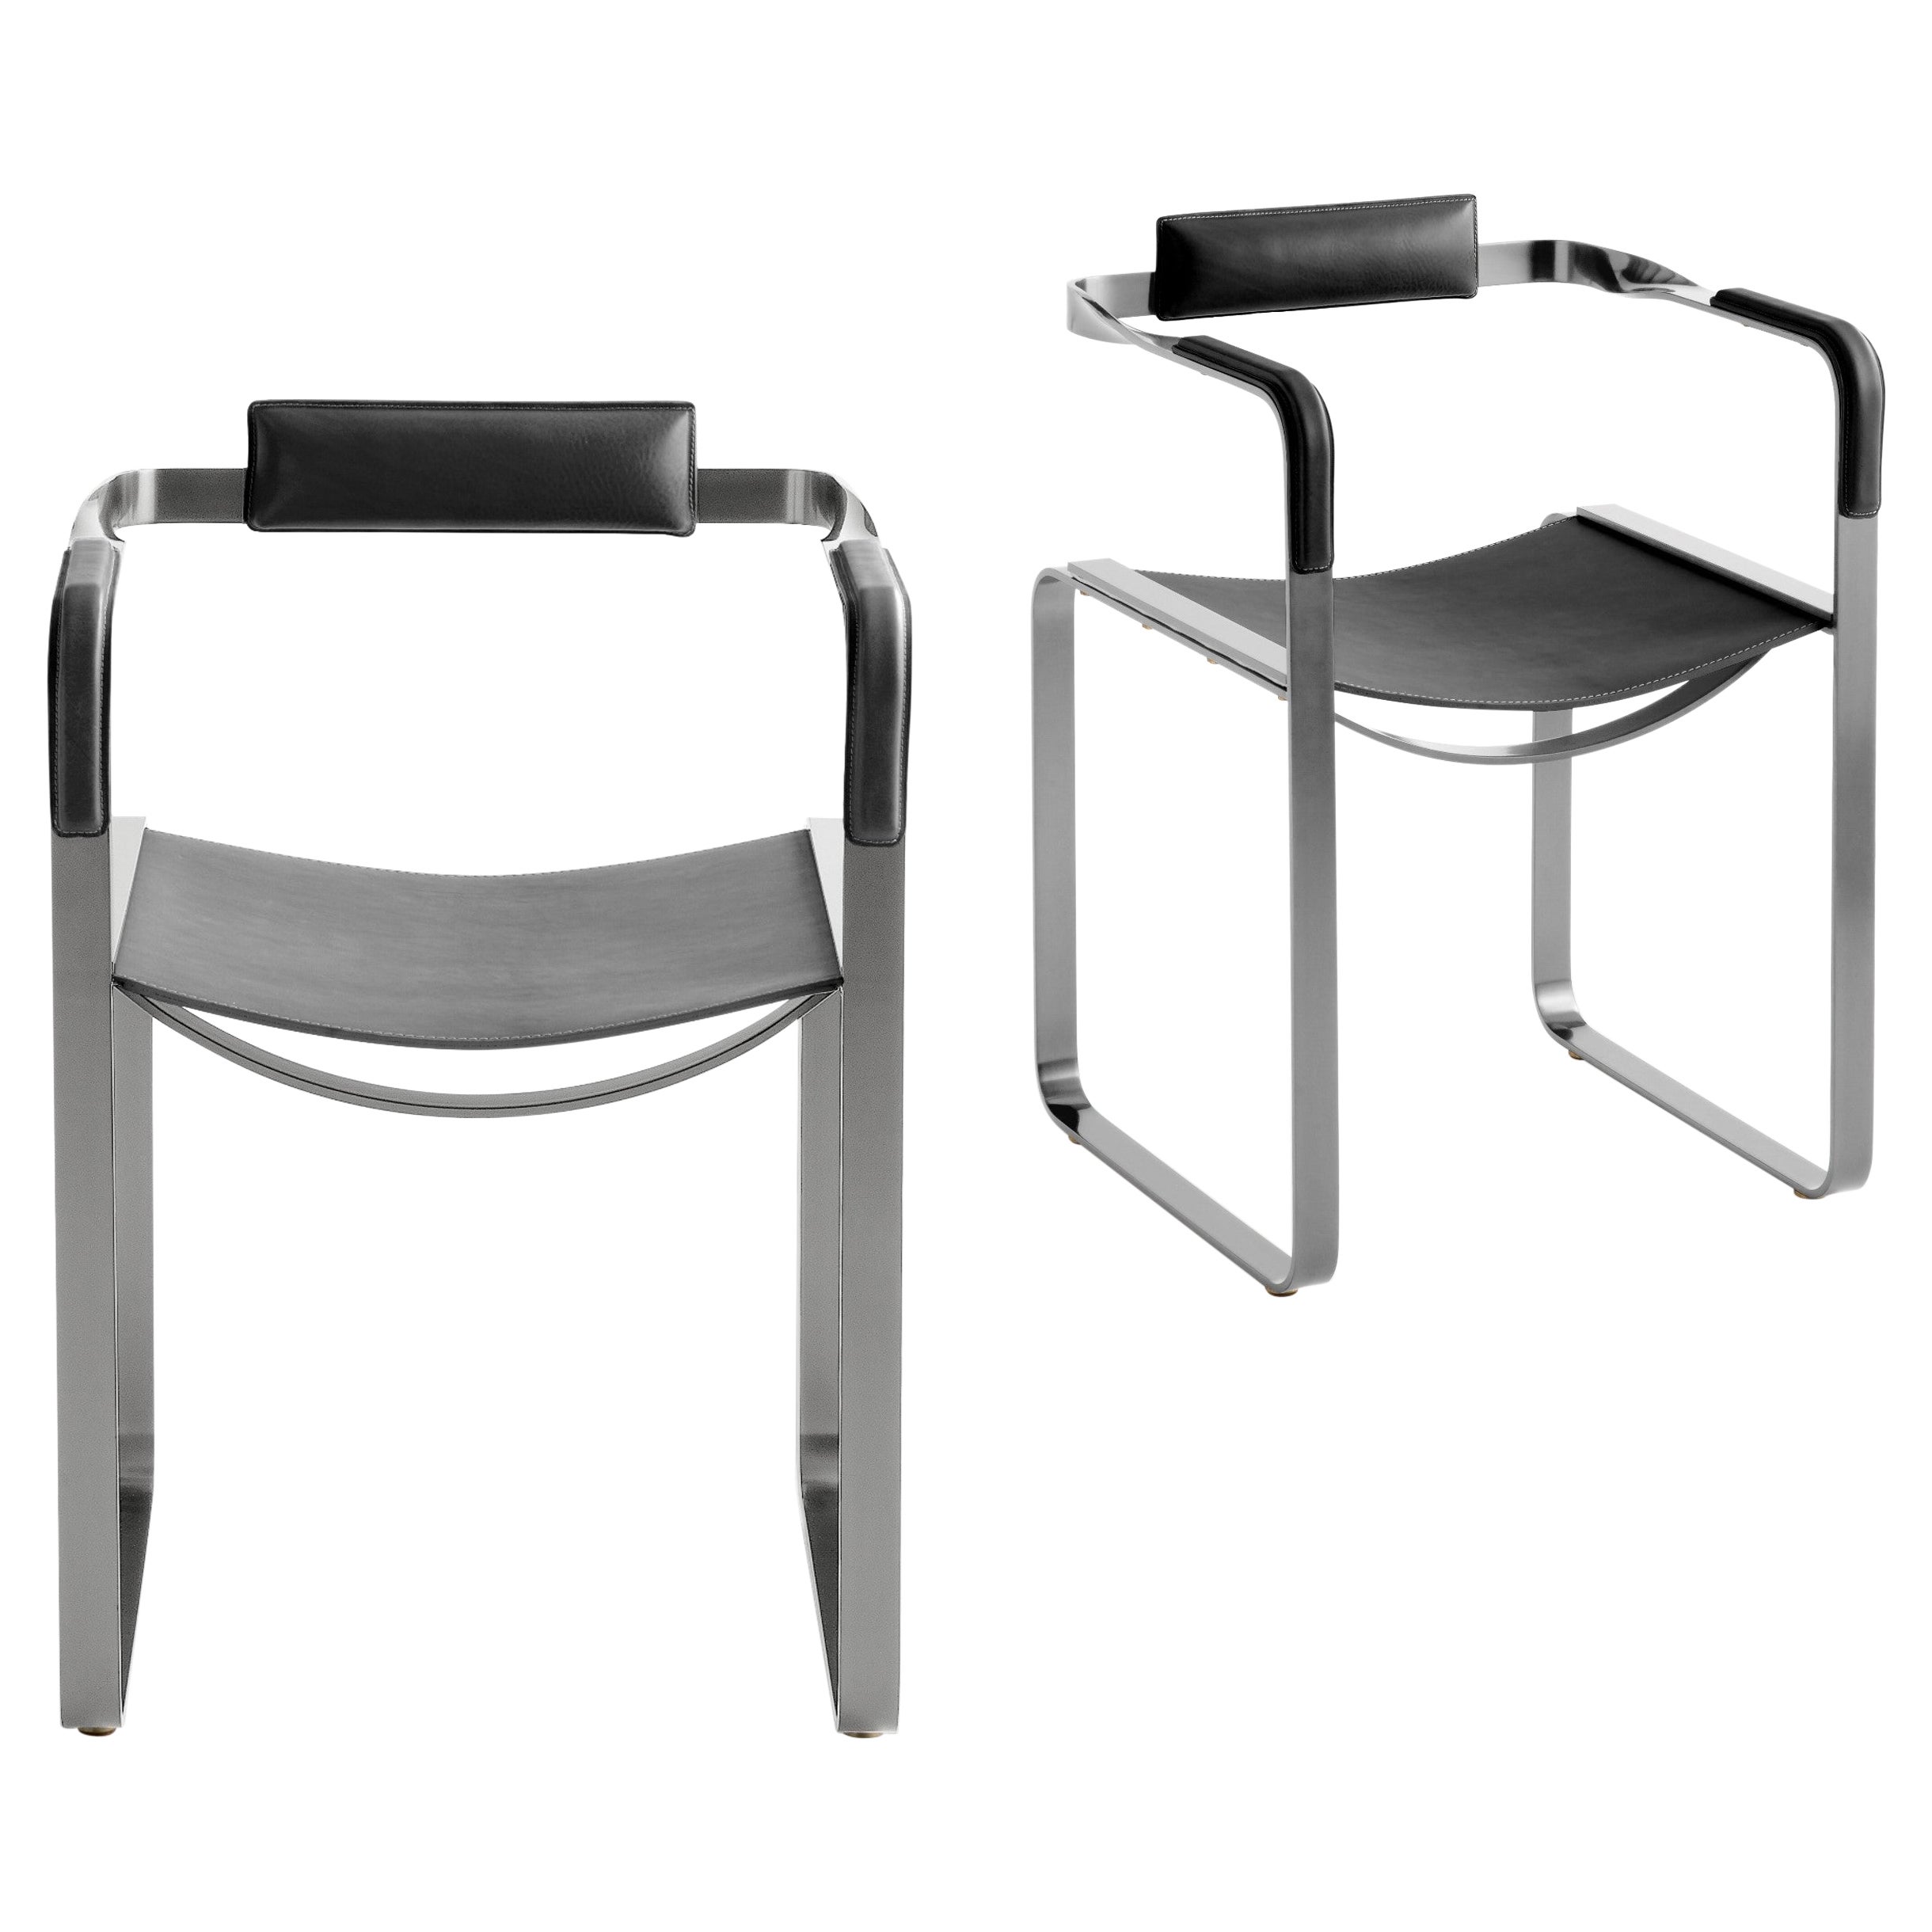 Set of 2, Armchair, Old Silver Steel & Black Saddle Leather, Contemporary Style (Ensemble de 2 fauteuils, acier vieil argent et cuir noir)